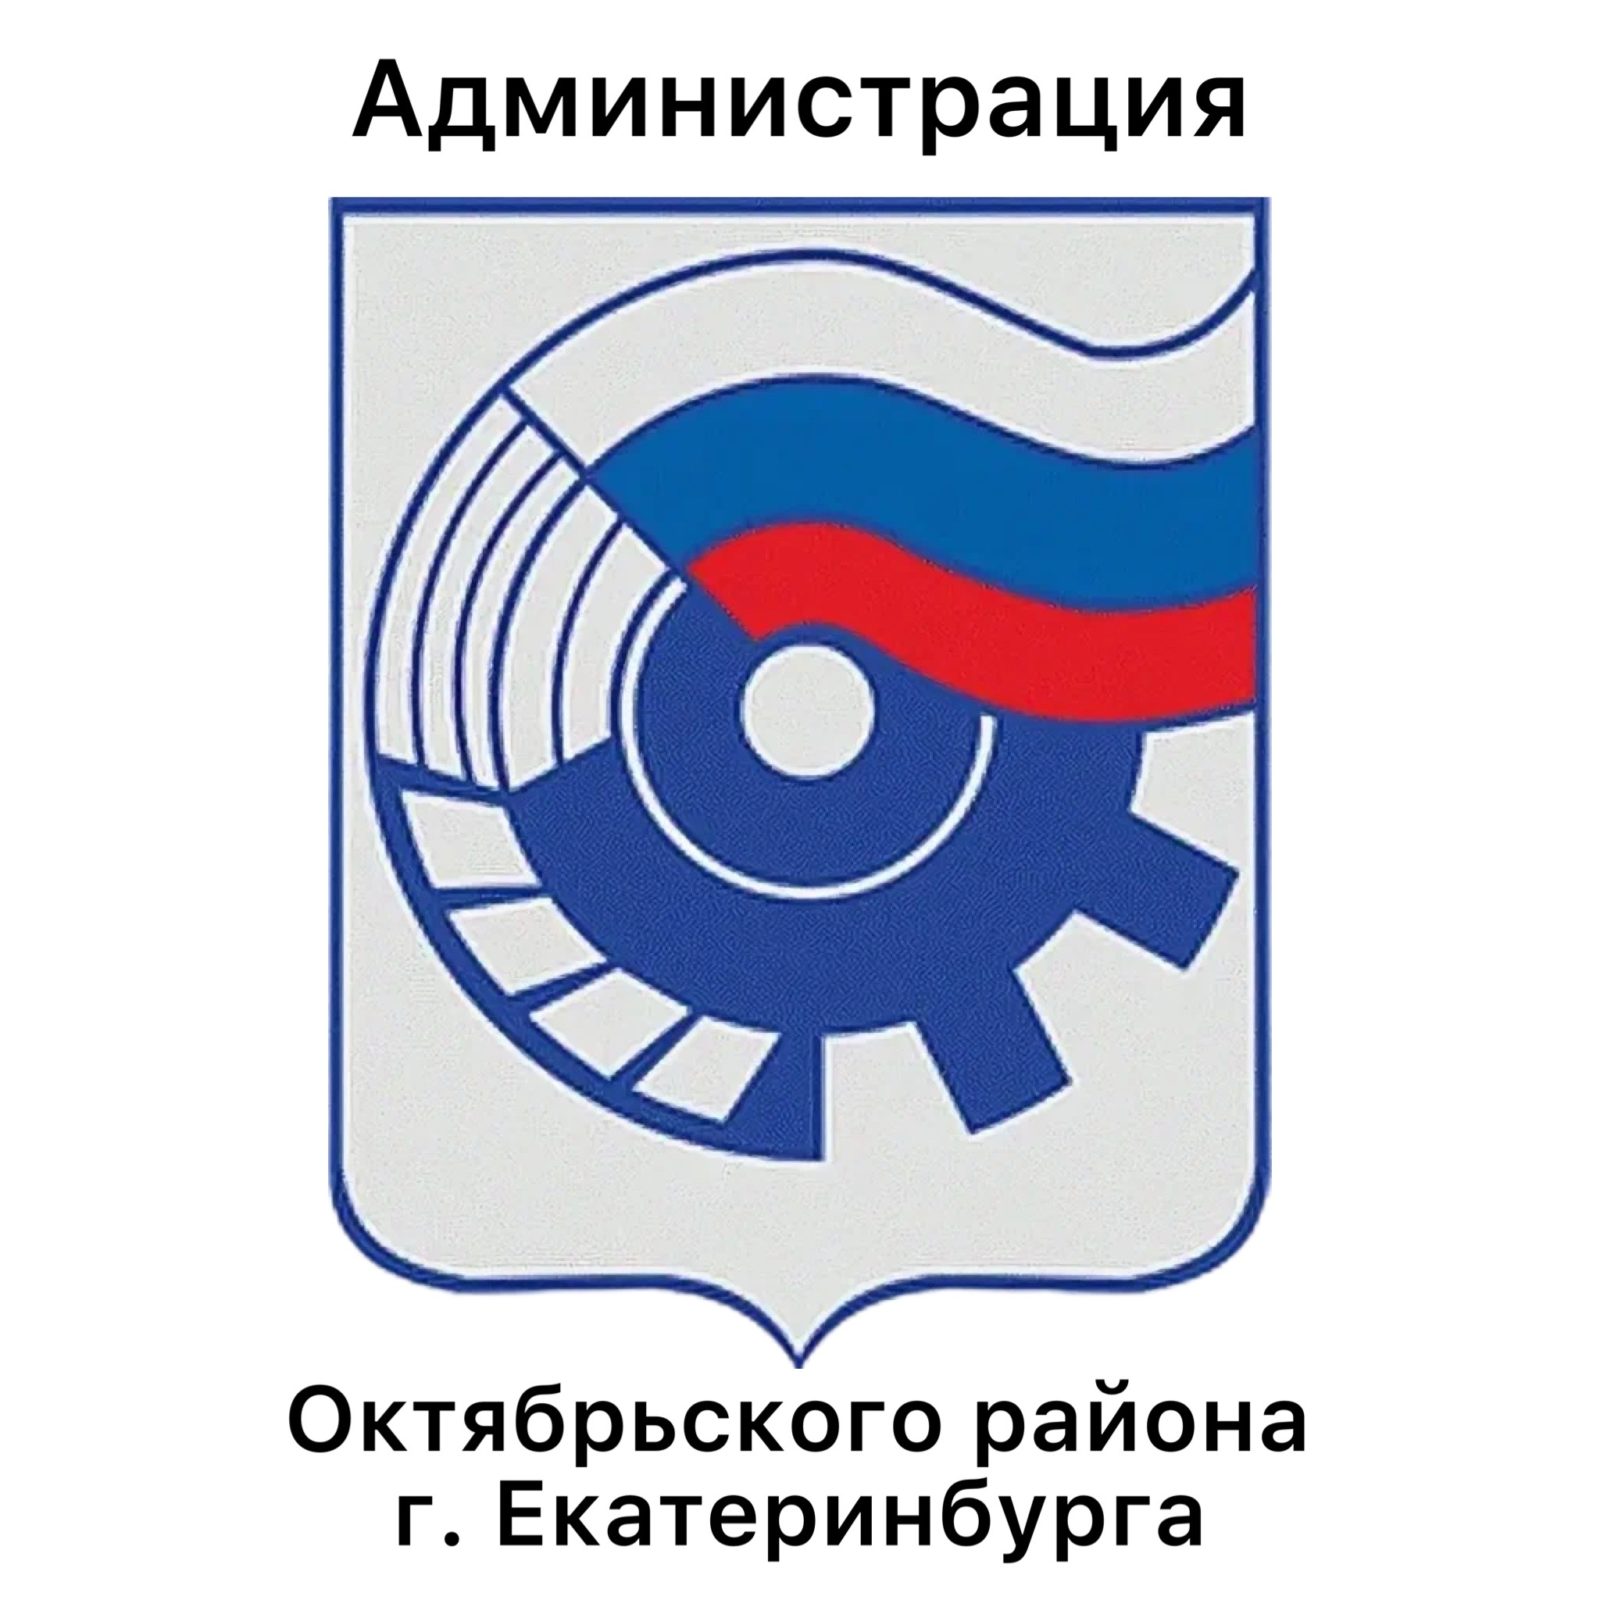 Администрация Октябрьского района г. Екатеринбурга